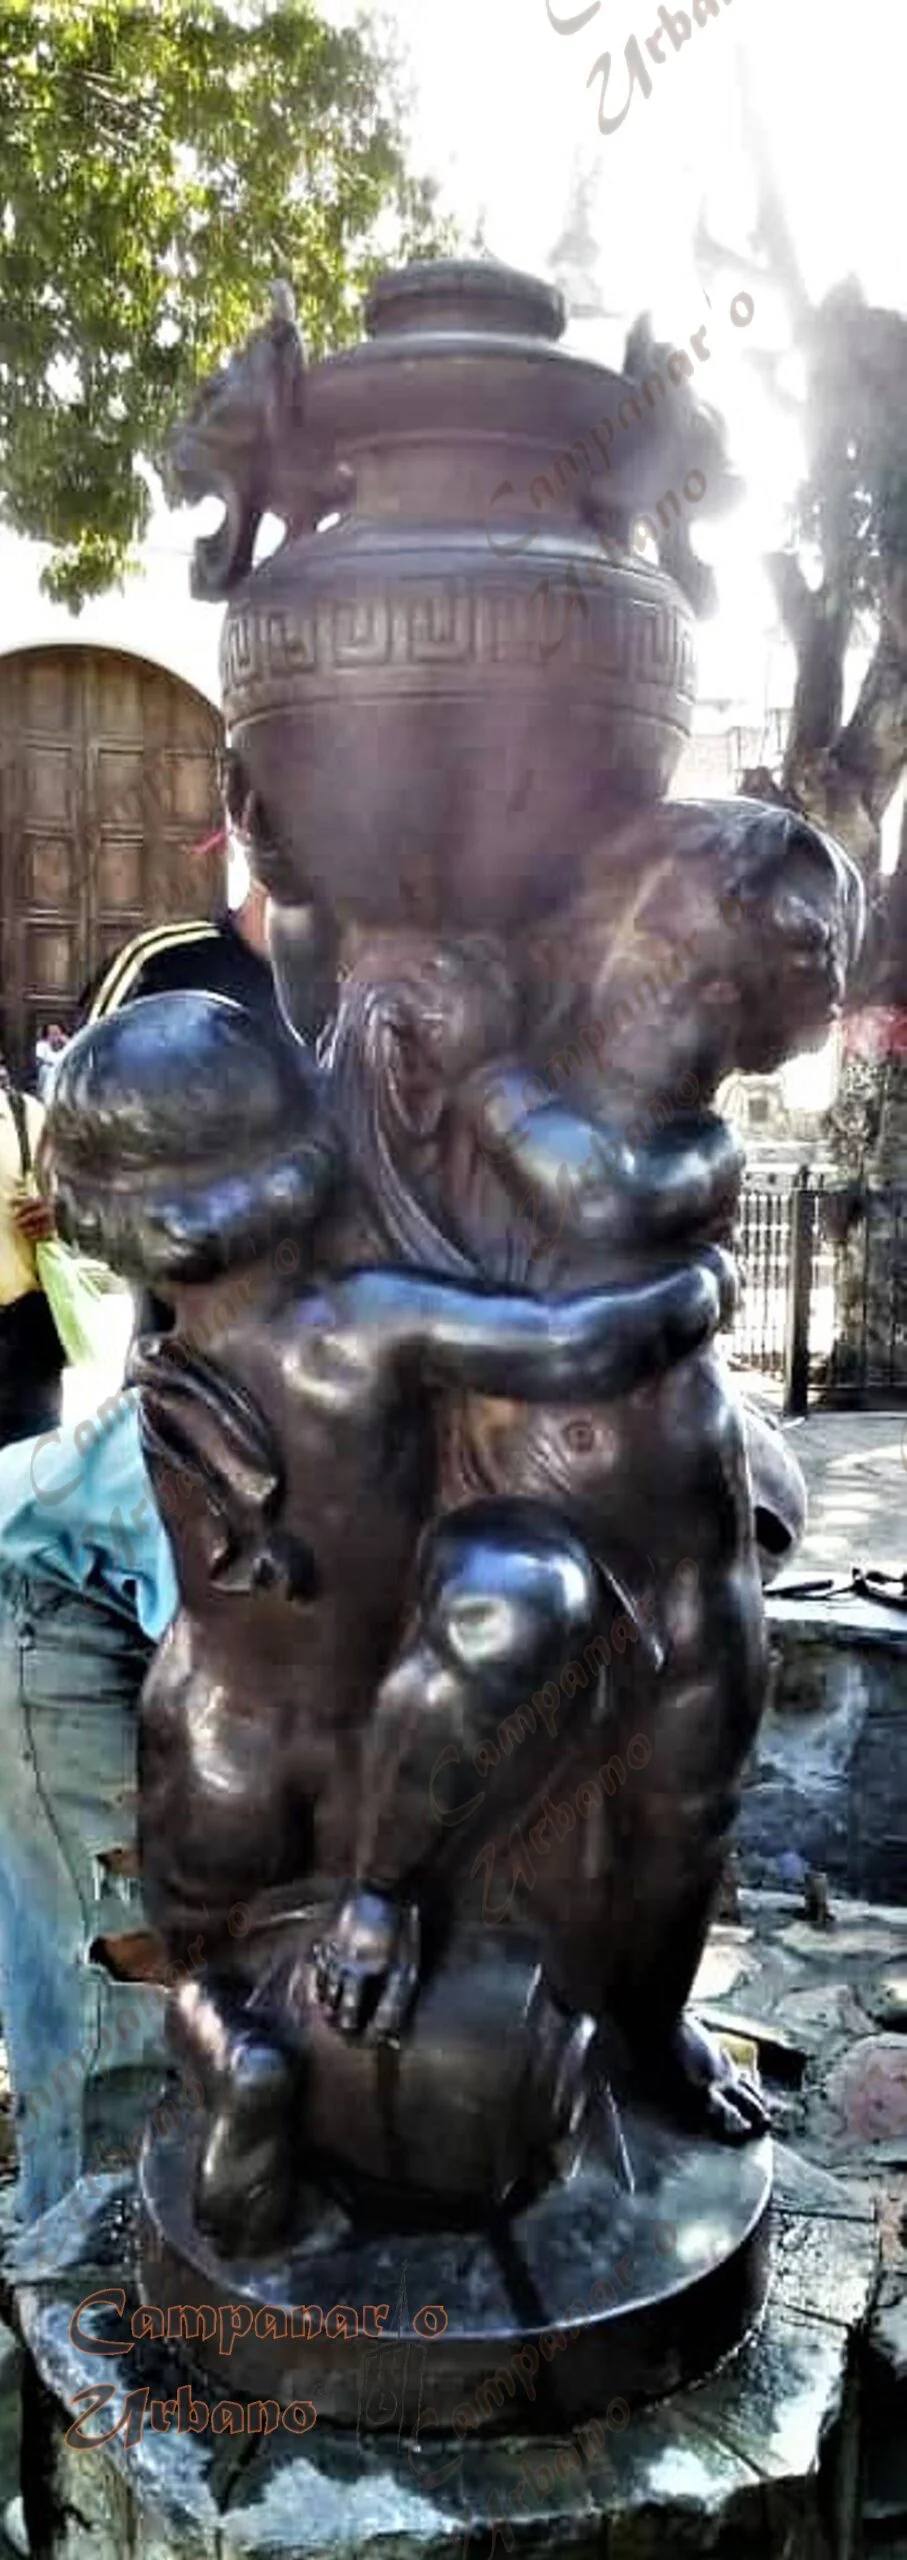 Escultura de Amorcillos en la fuente de la Plaza La Candelaria de Guarenas, del escultor Emile Antoine Durenne, elaborado entre 1880 y 1885. Fotografía del 1ro. de febrero de 2021.